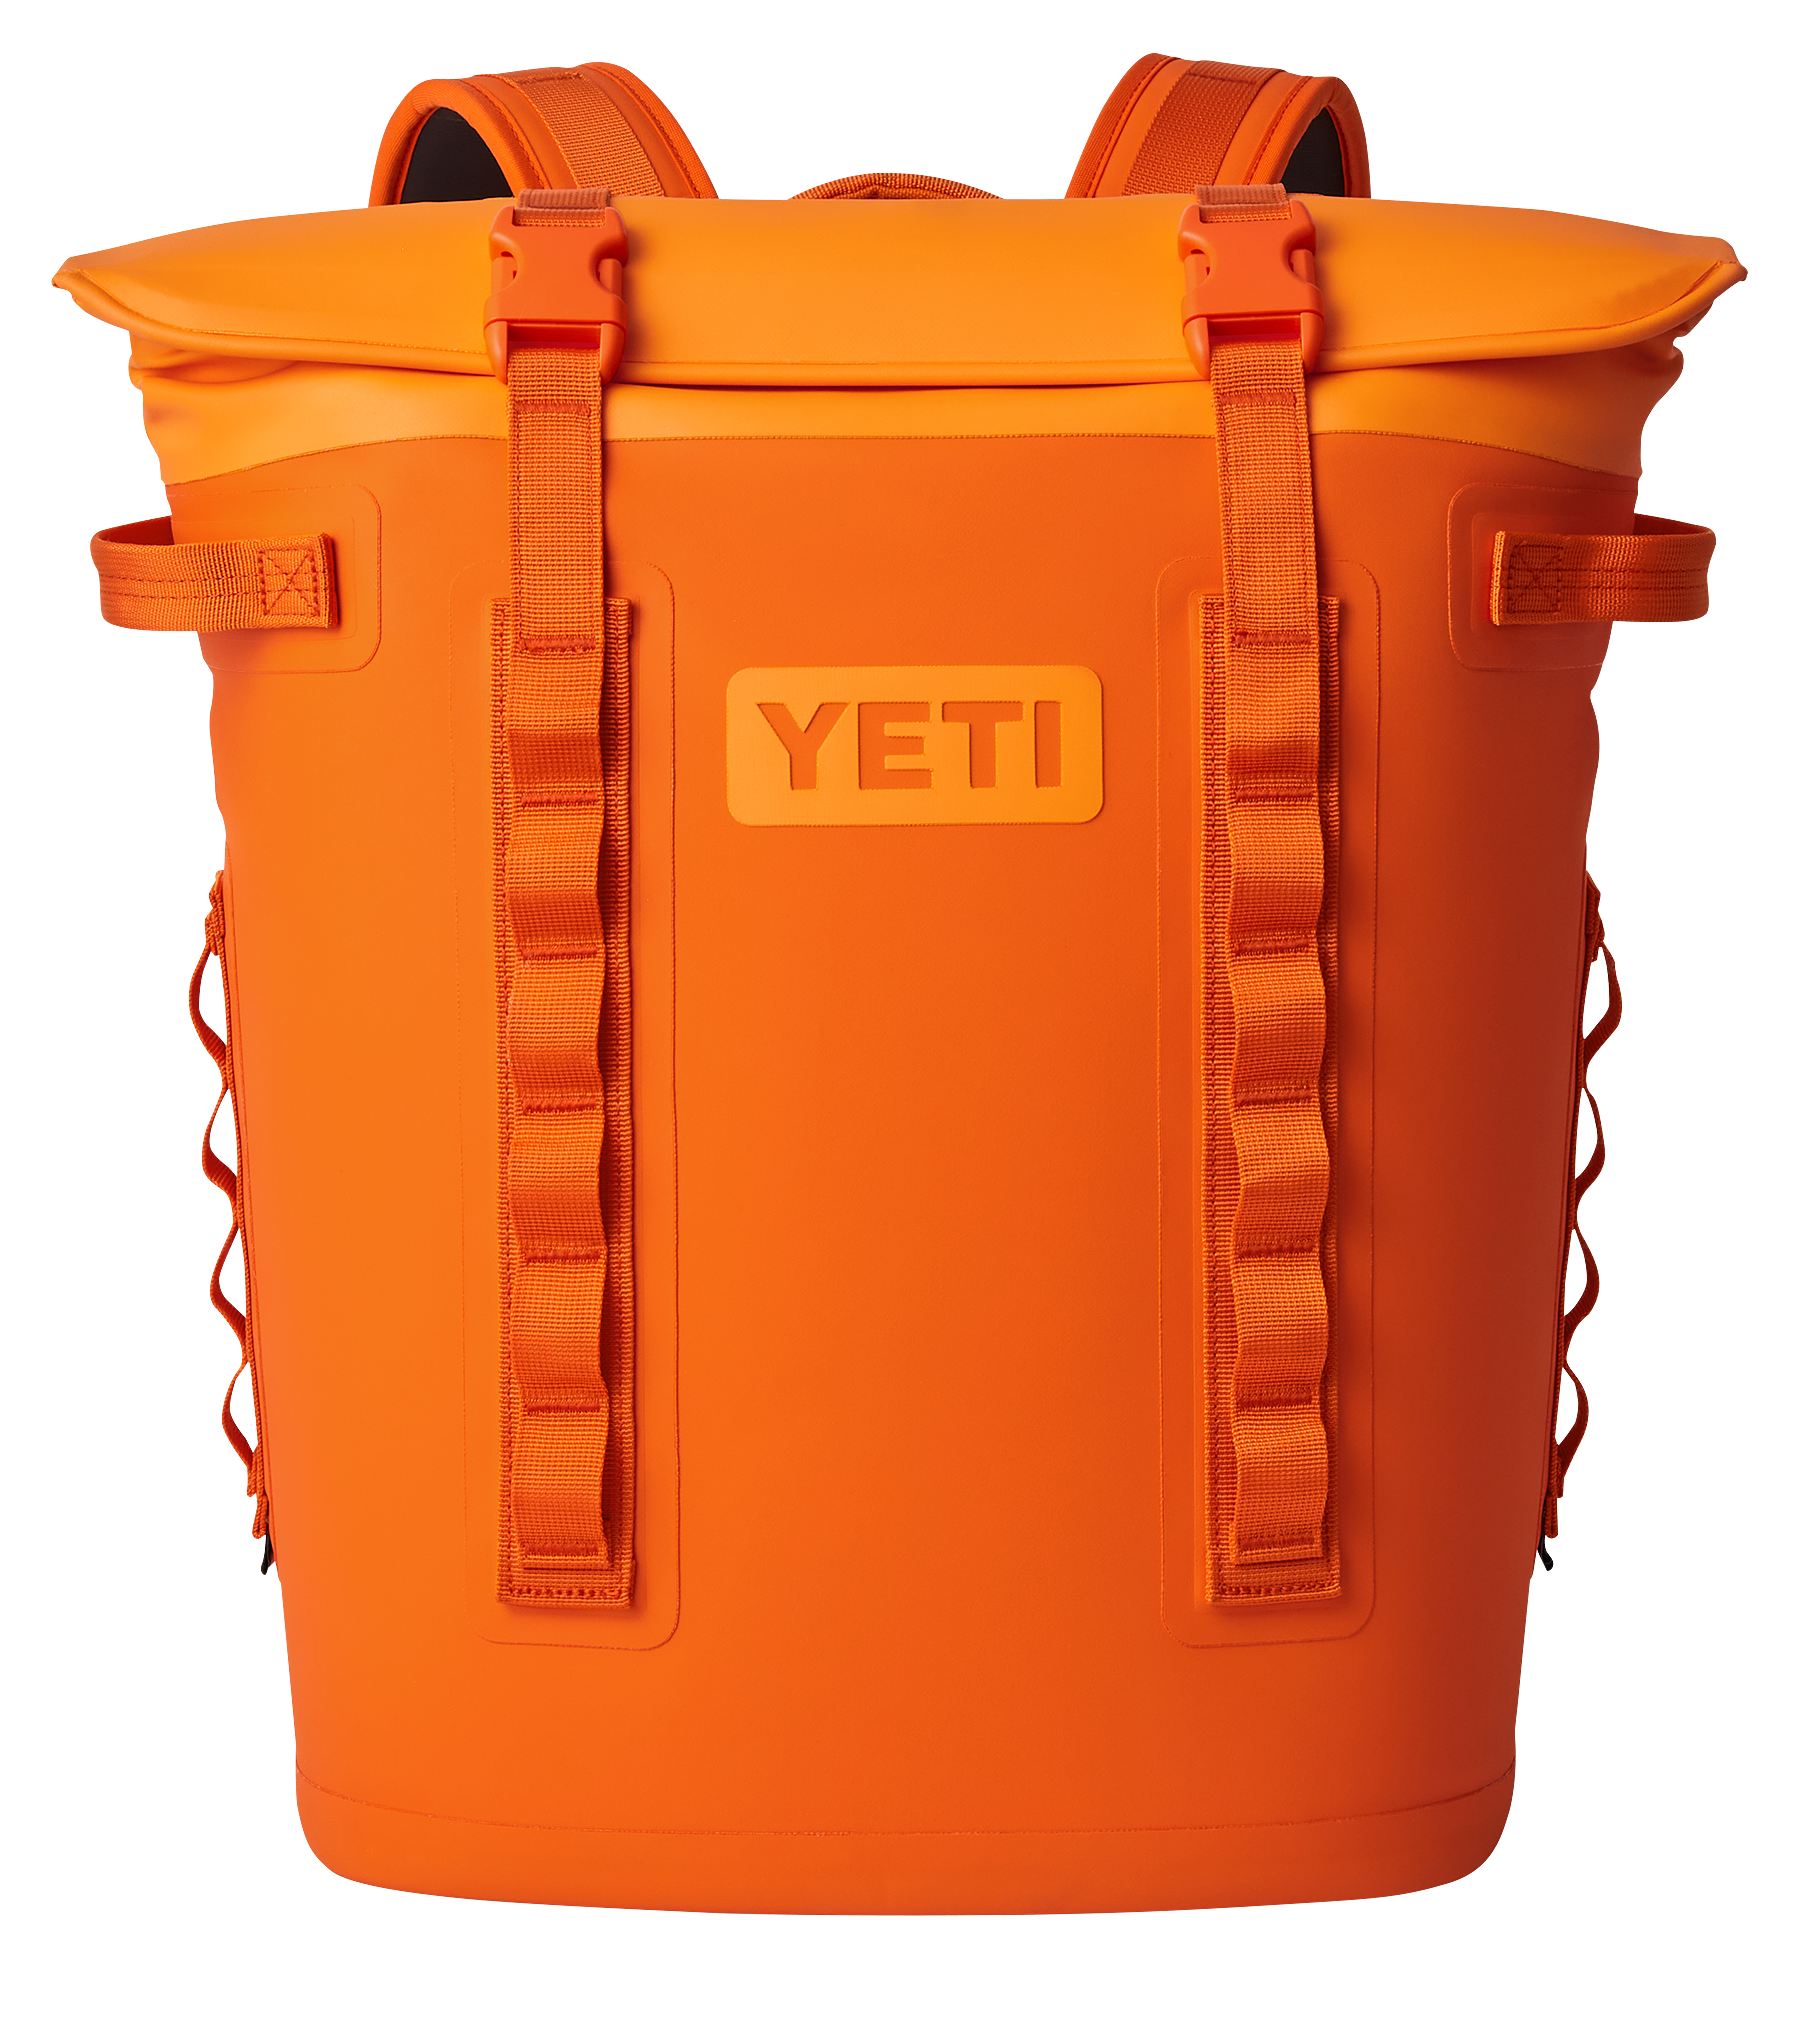 YETI Hopper M20 Backpack Cooler - King Crab Orange - 36 Cans